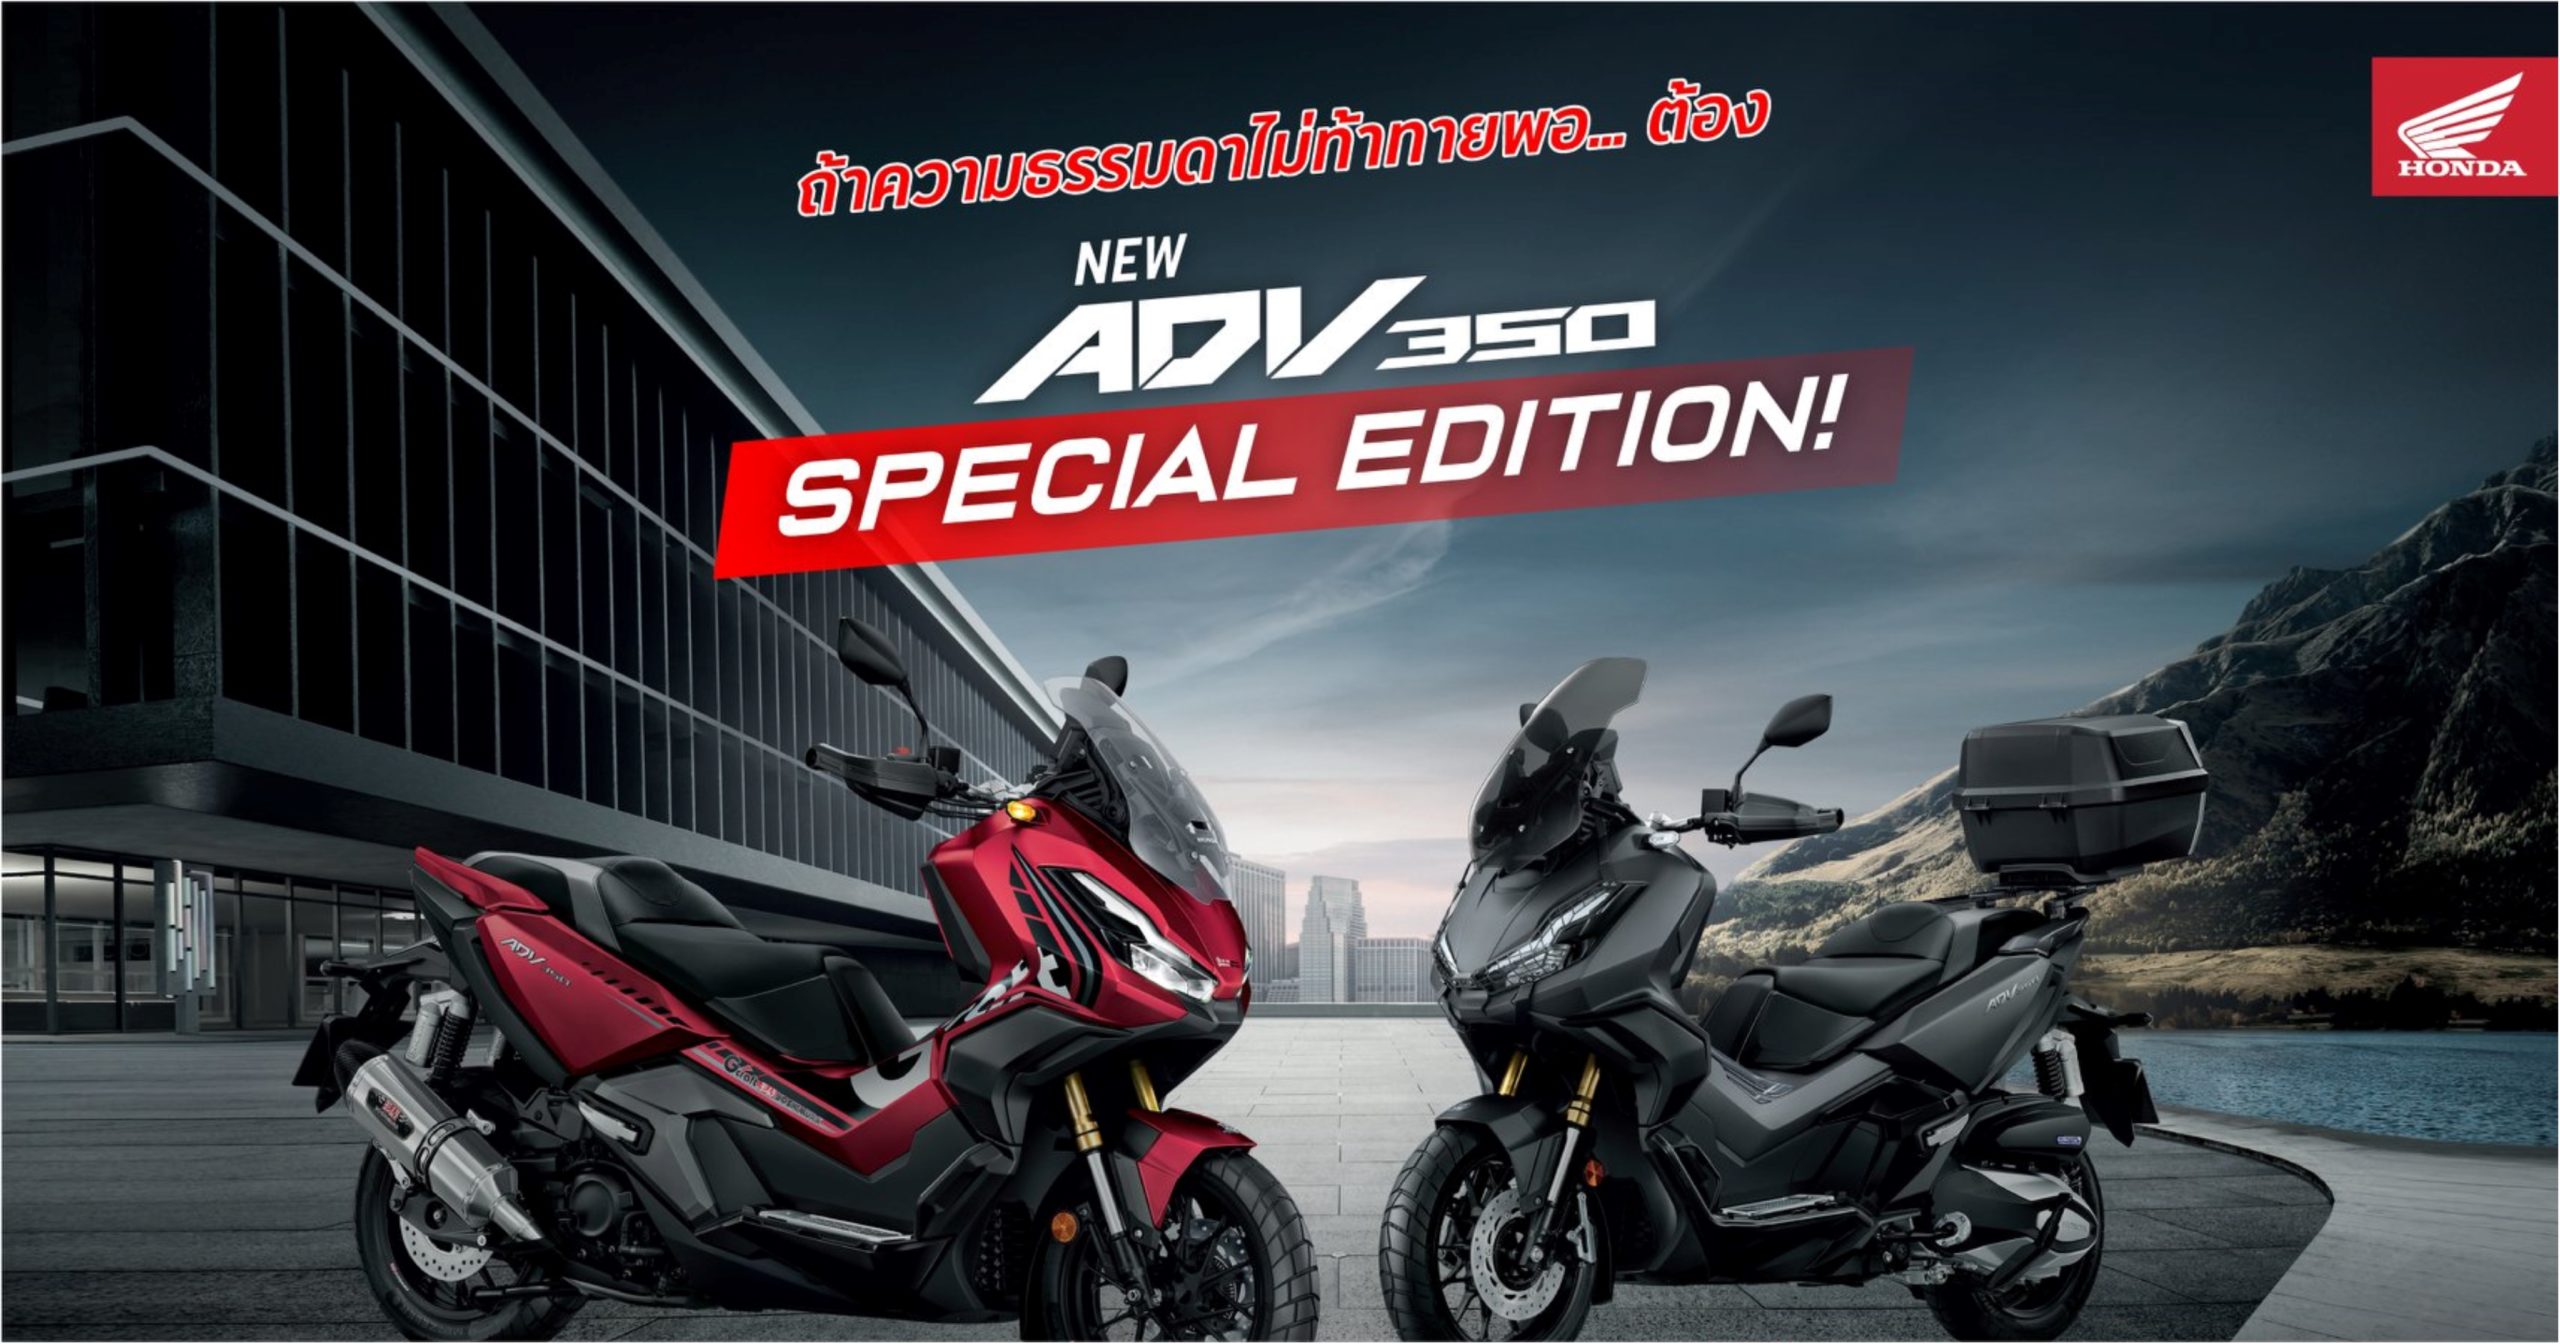 Adv 350 honda price malaysia